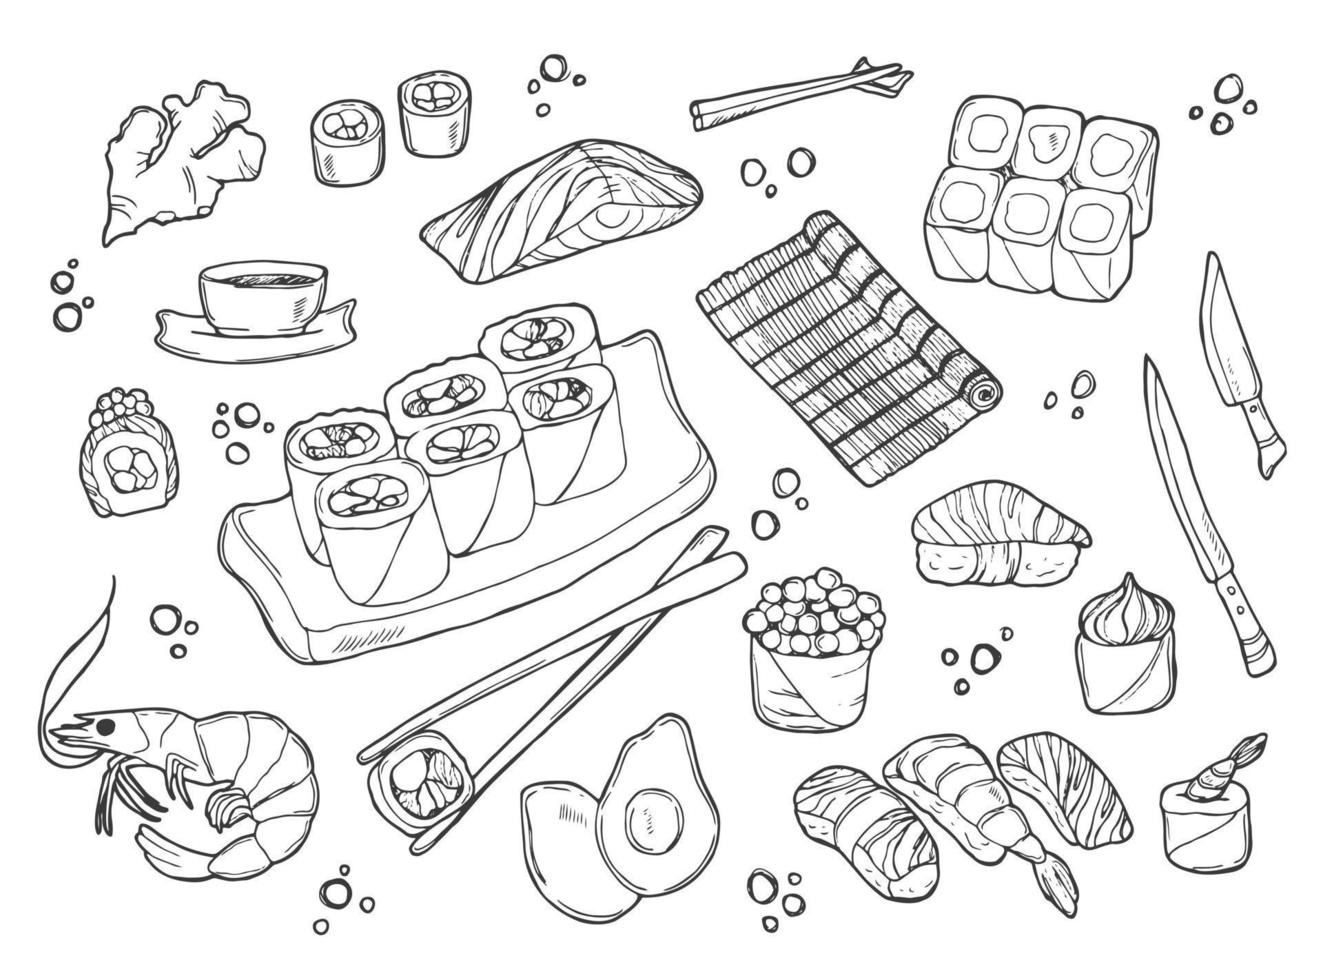 sushi och rullar uppsättning i klotter stil. japansk traditionell kök maträtter - nigiri, temaki, tamago, sashimi, uramaki, futomaki. vektor teckning isolerat på vit bakgrund för asiatisk restaurang meny.